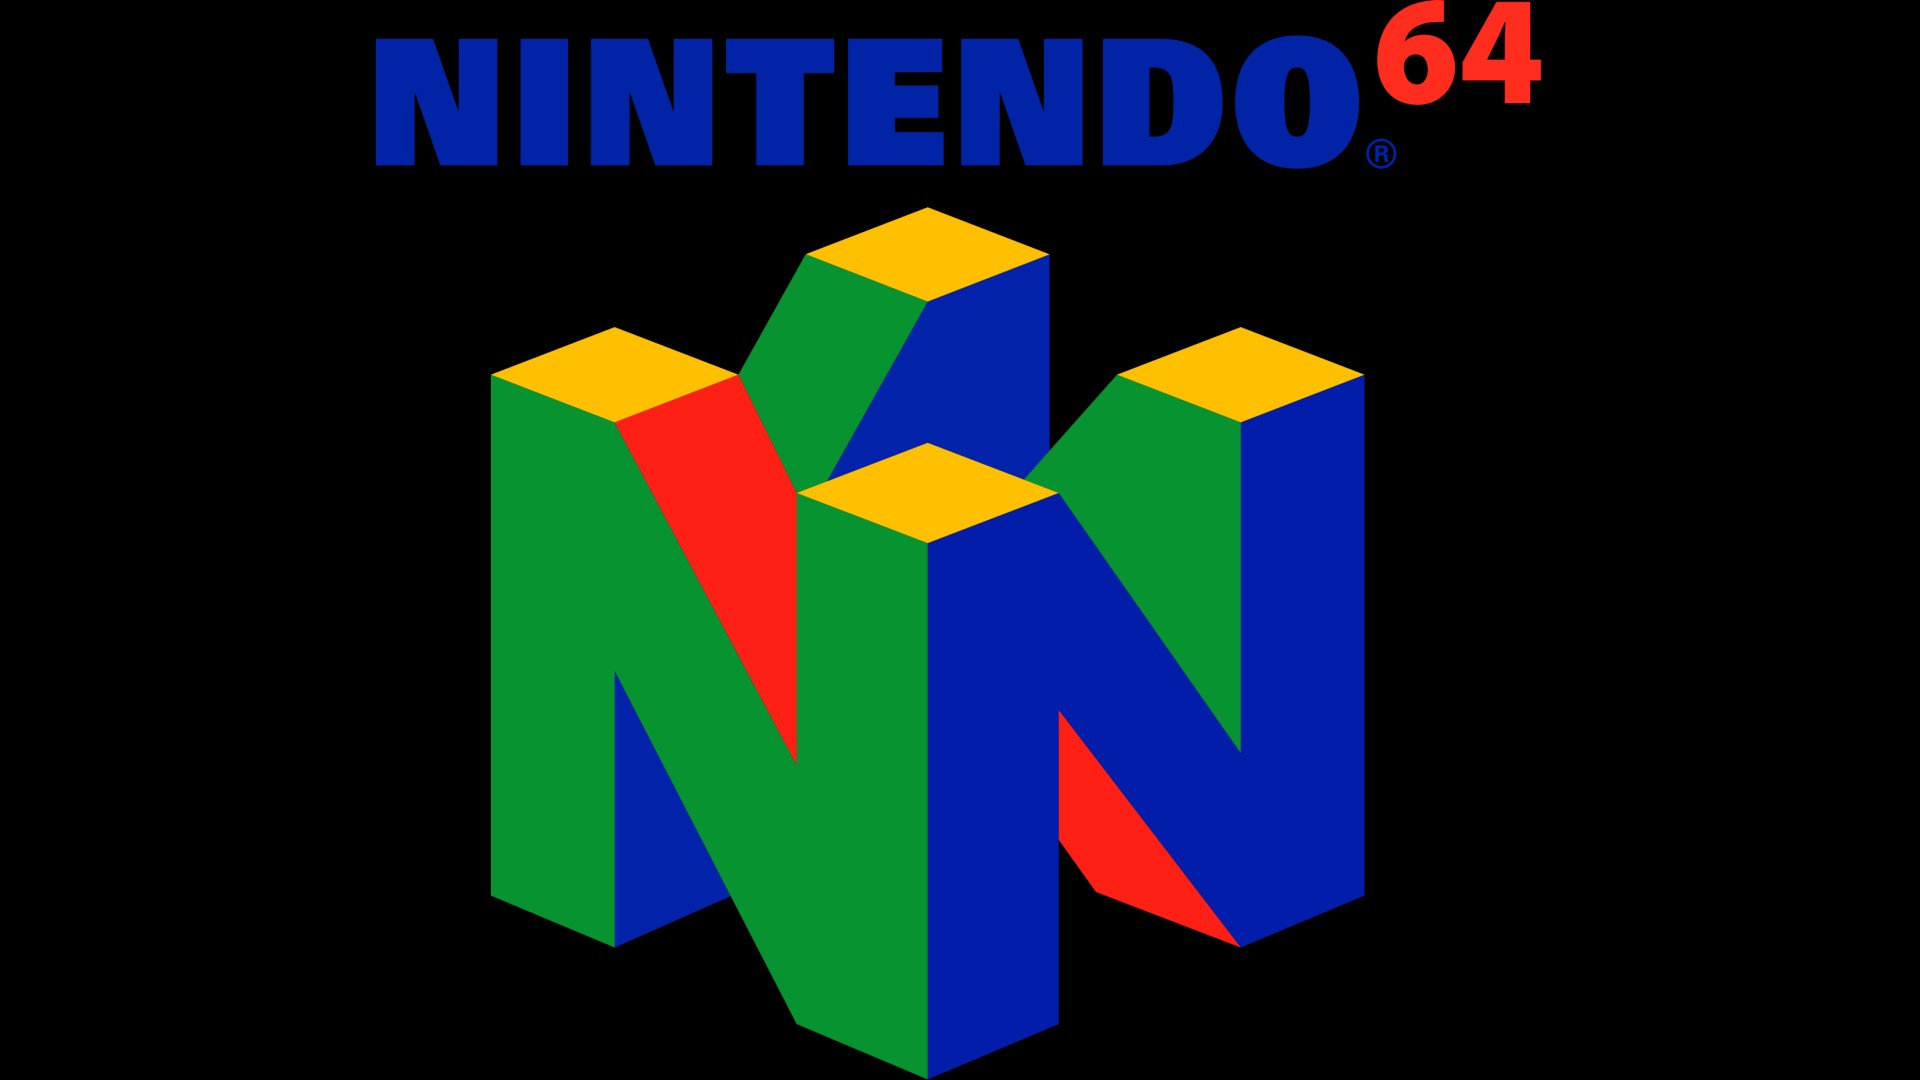 n64-logo-wallpaper-1920x1080-27889